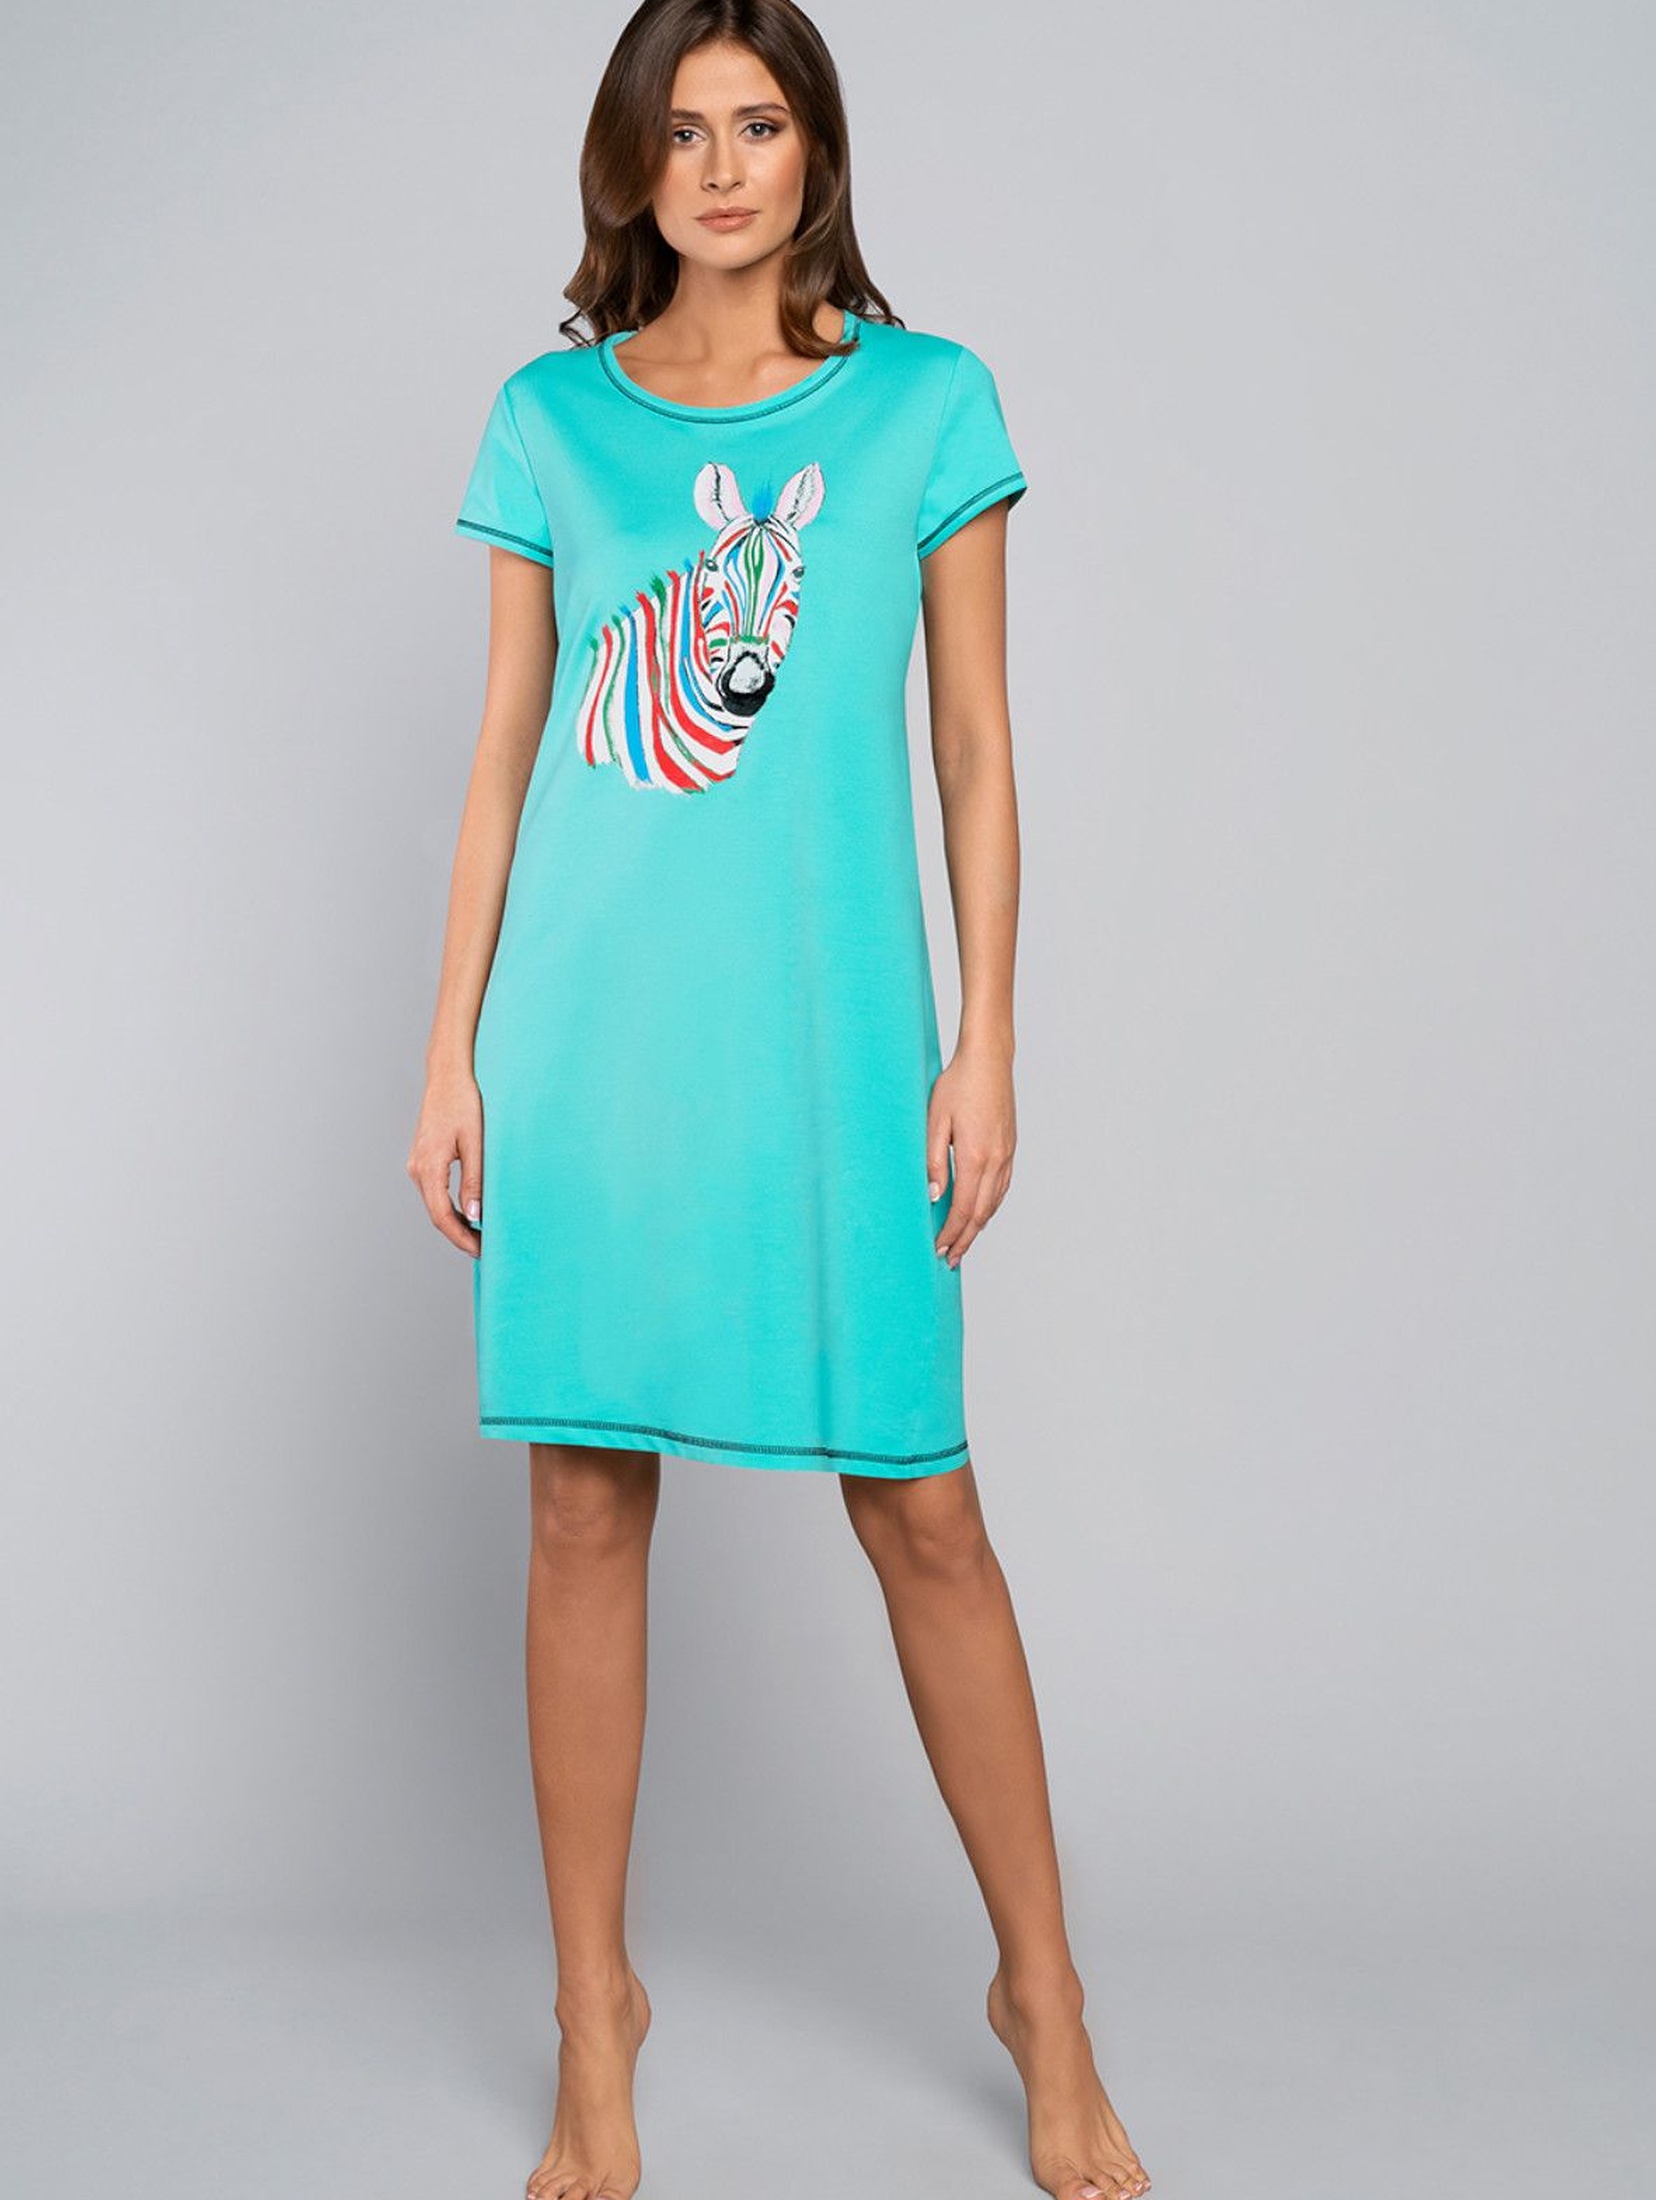 Bawełniana koszula nocna damska z zebrą - turkusowa